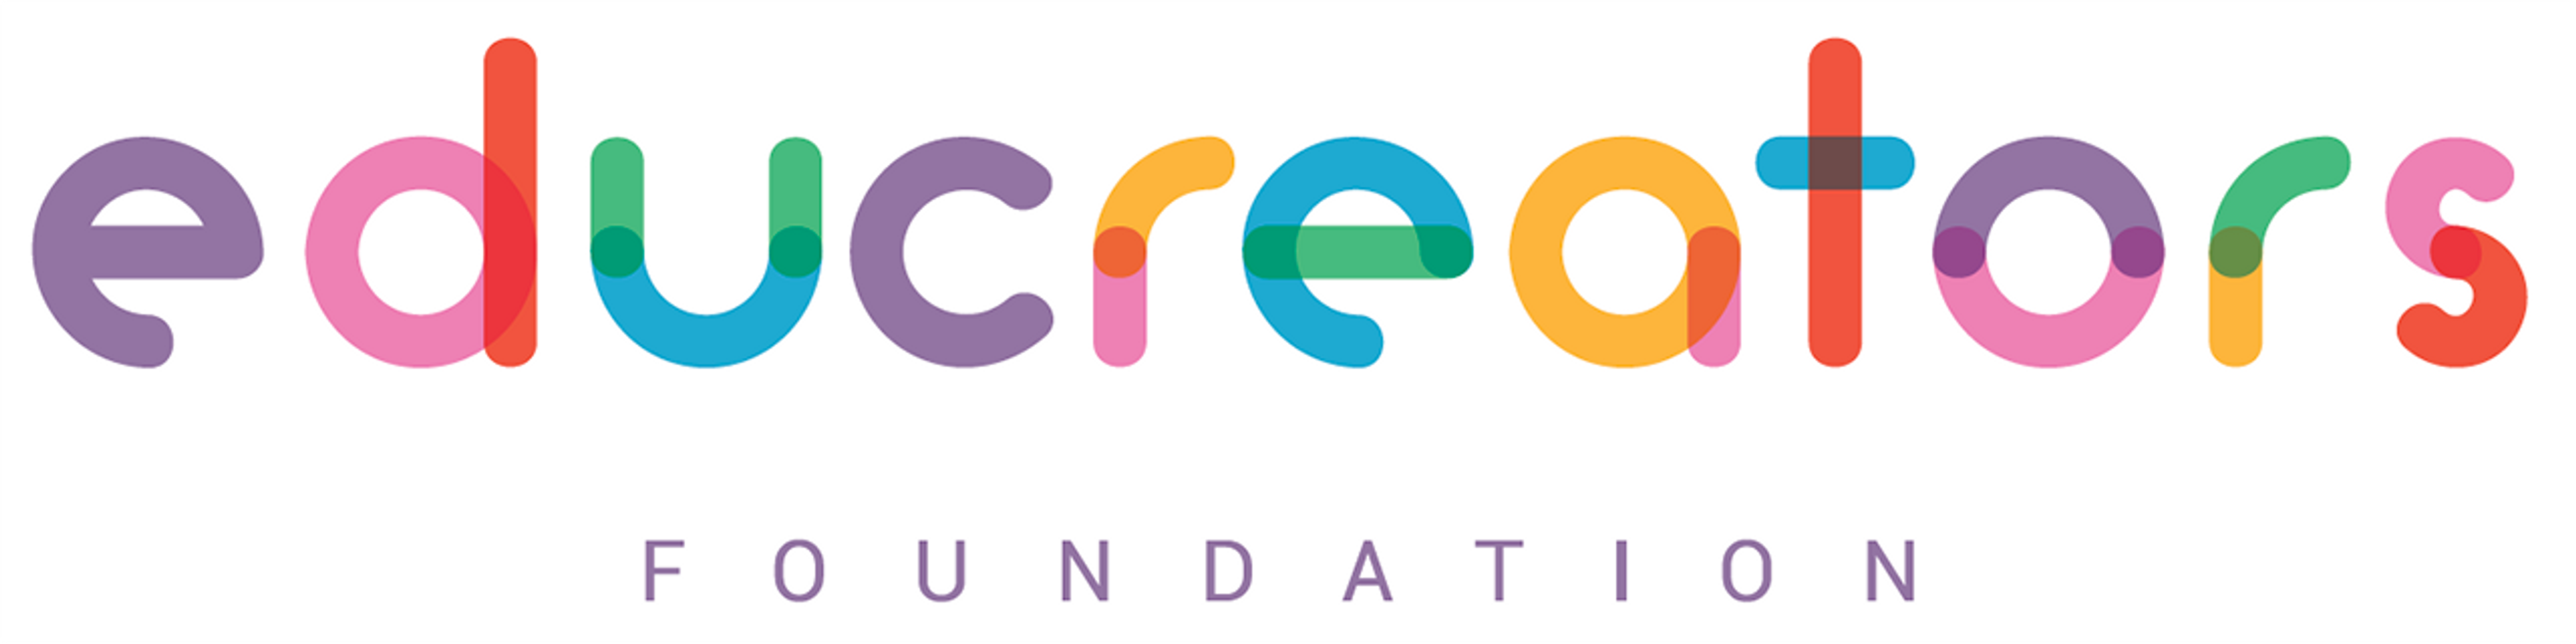 Logo della fondazione Educreators